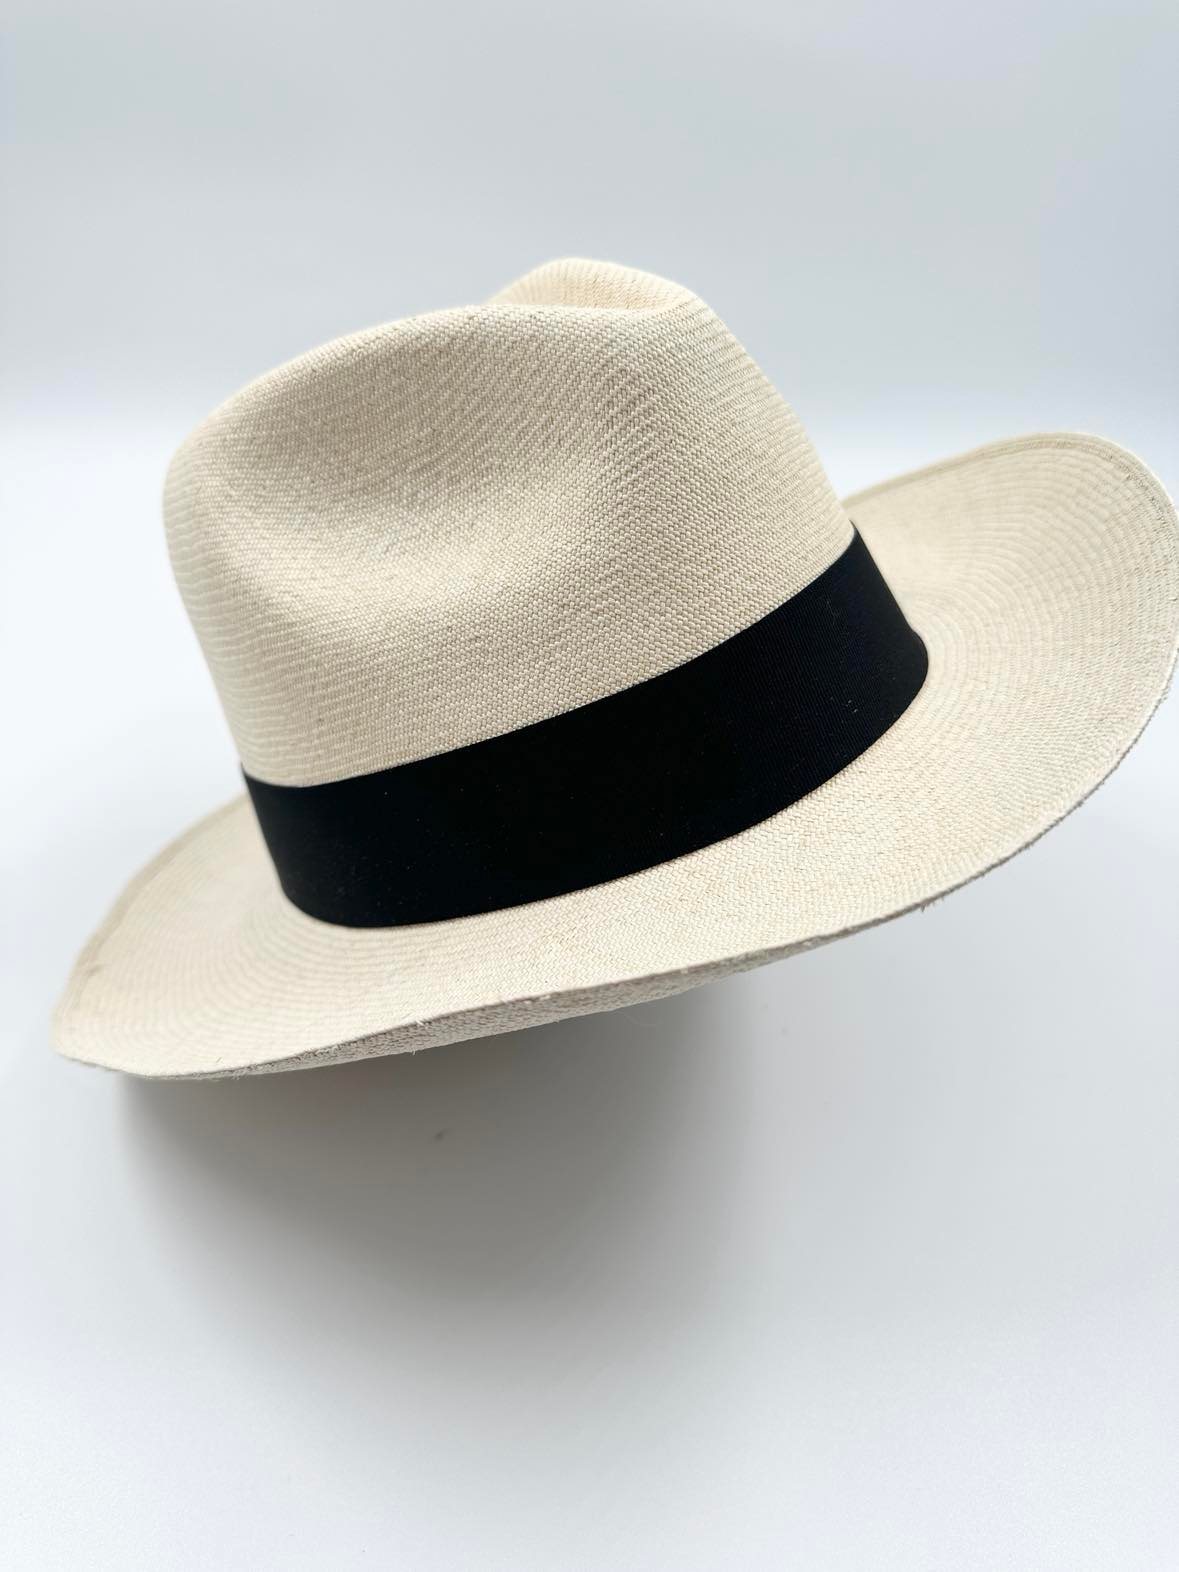 Ægte Montecristi Fedora Panama Hat med en kvalitet på 19-20 fletninger pr. inch - håndflettet og unik